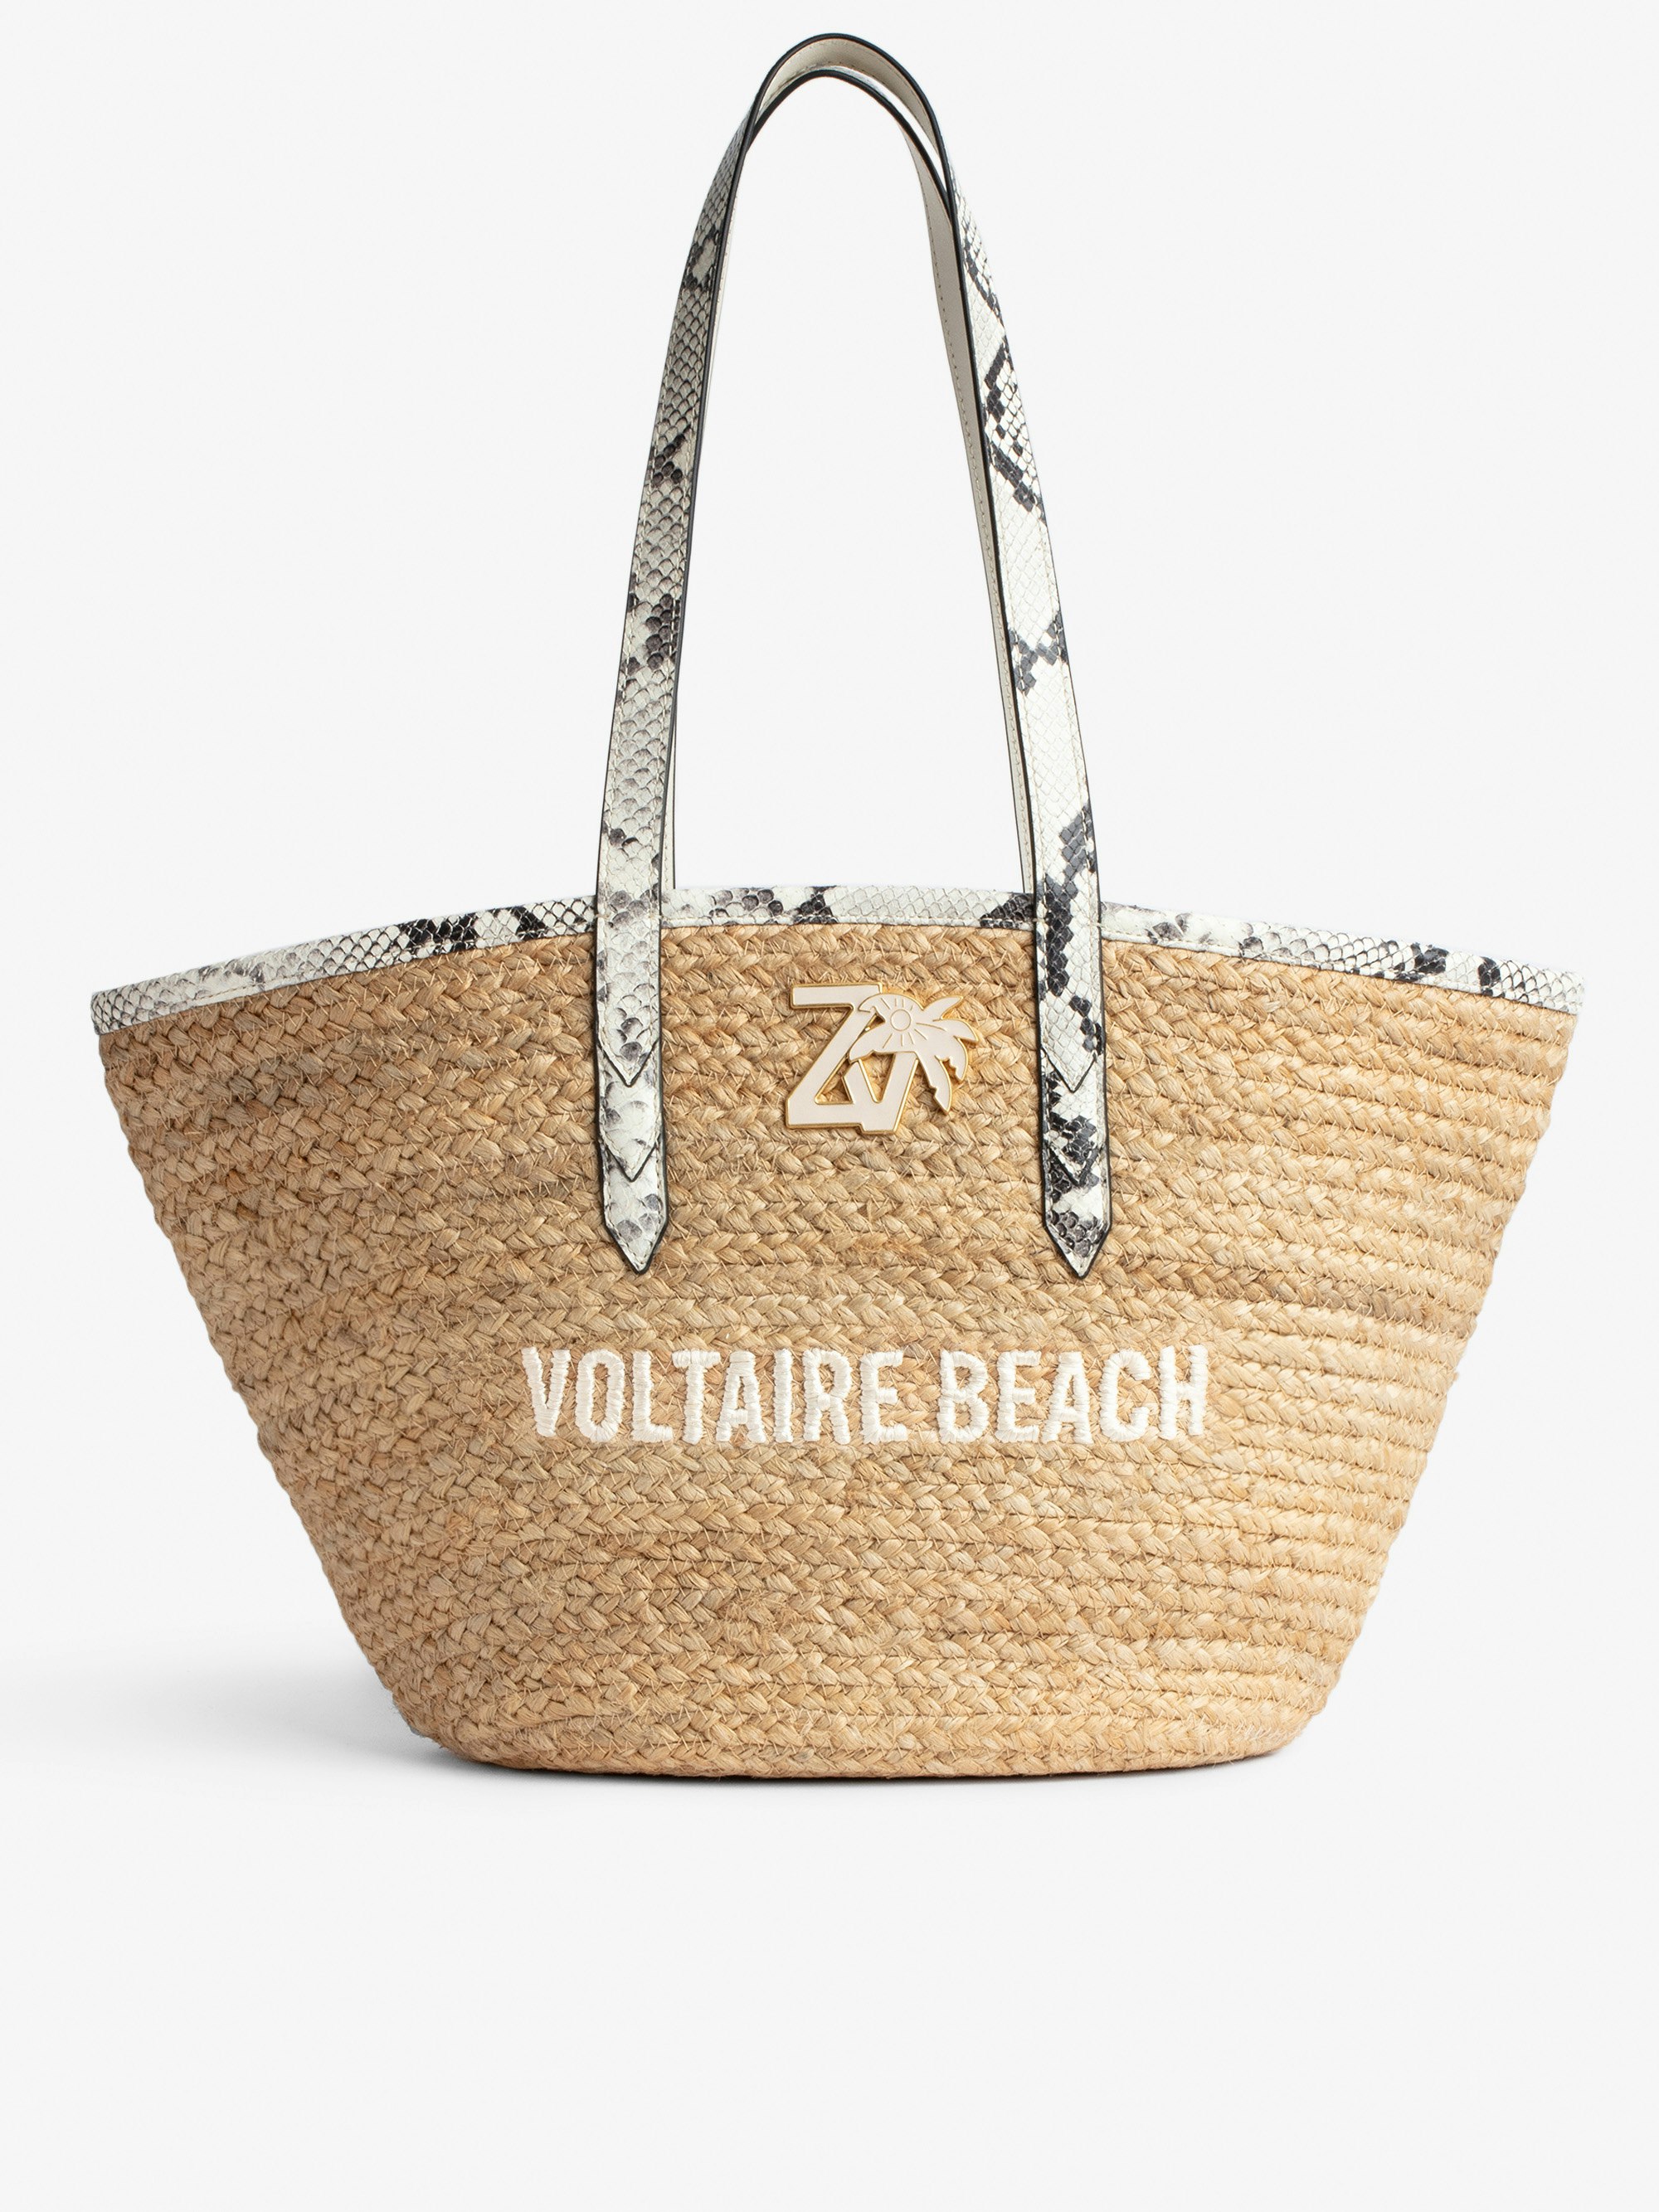 Borsa Le Beach Bag - Borsa in paglia con manici in pelle ecru effetto pitone, con ricamo "Voltaire Beach" e impreziosita da un charm ZV - Donna